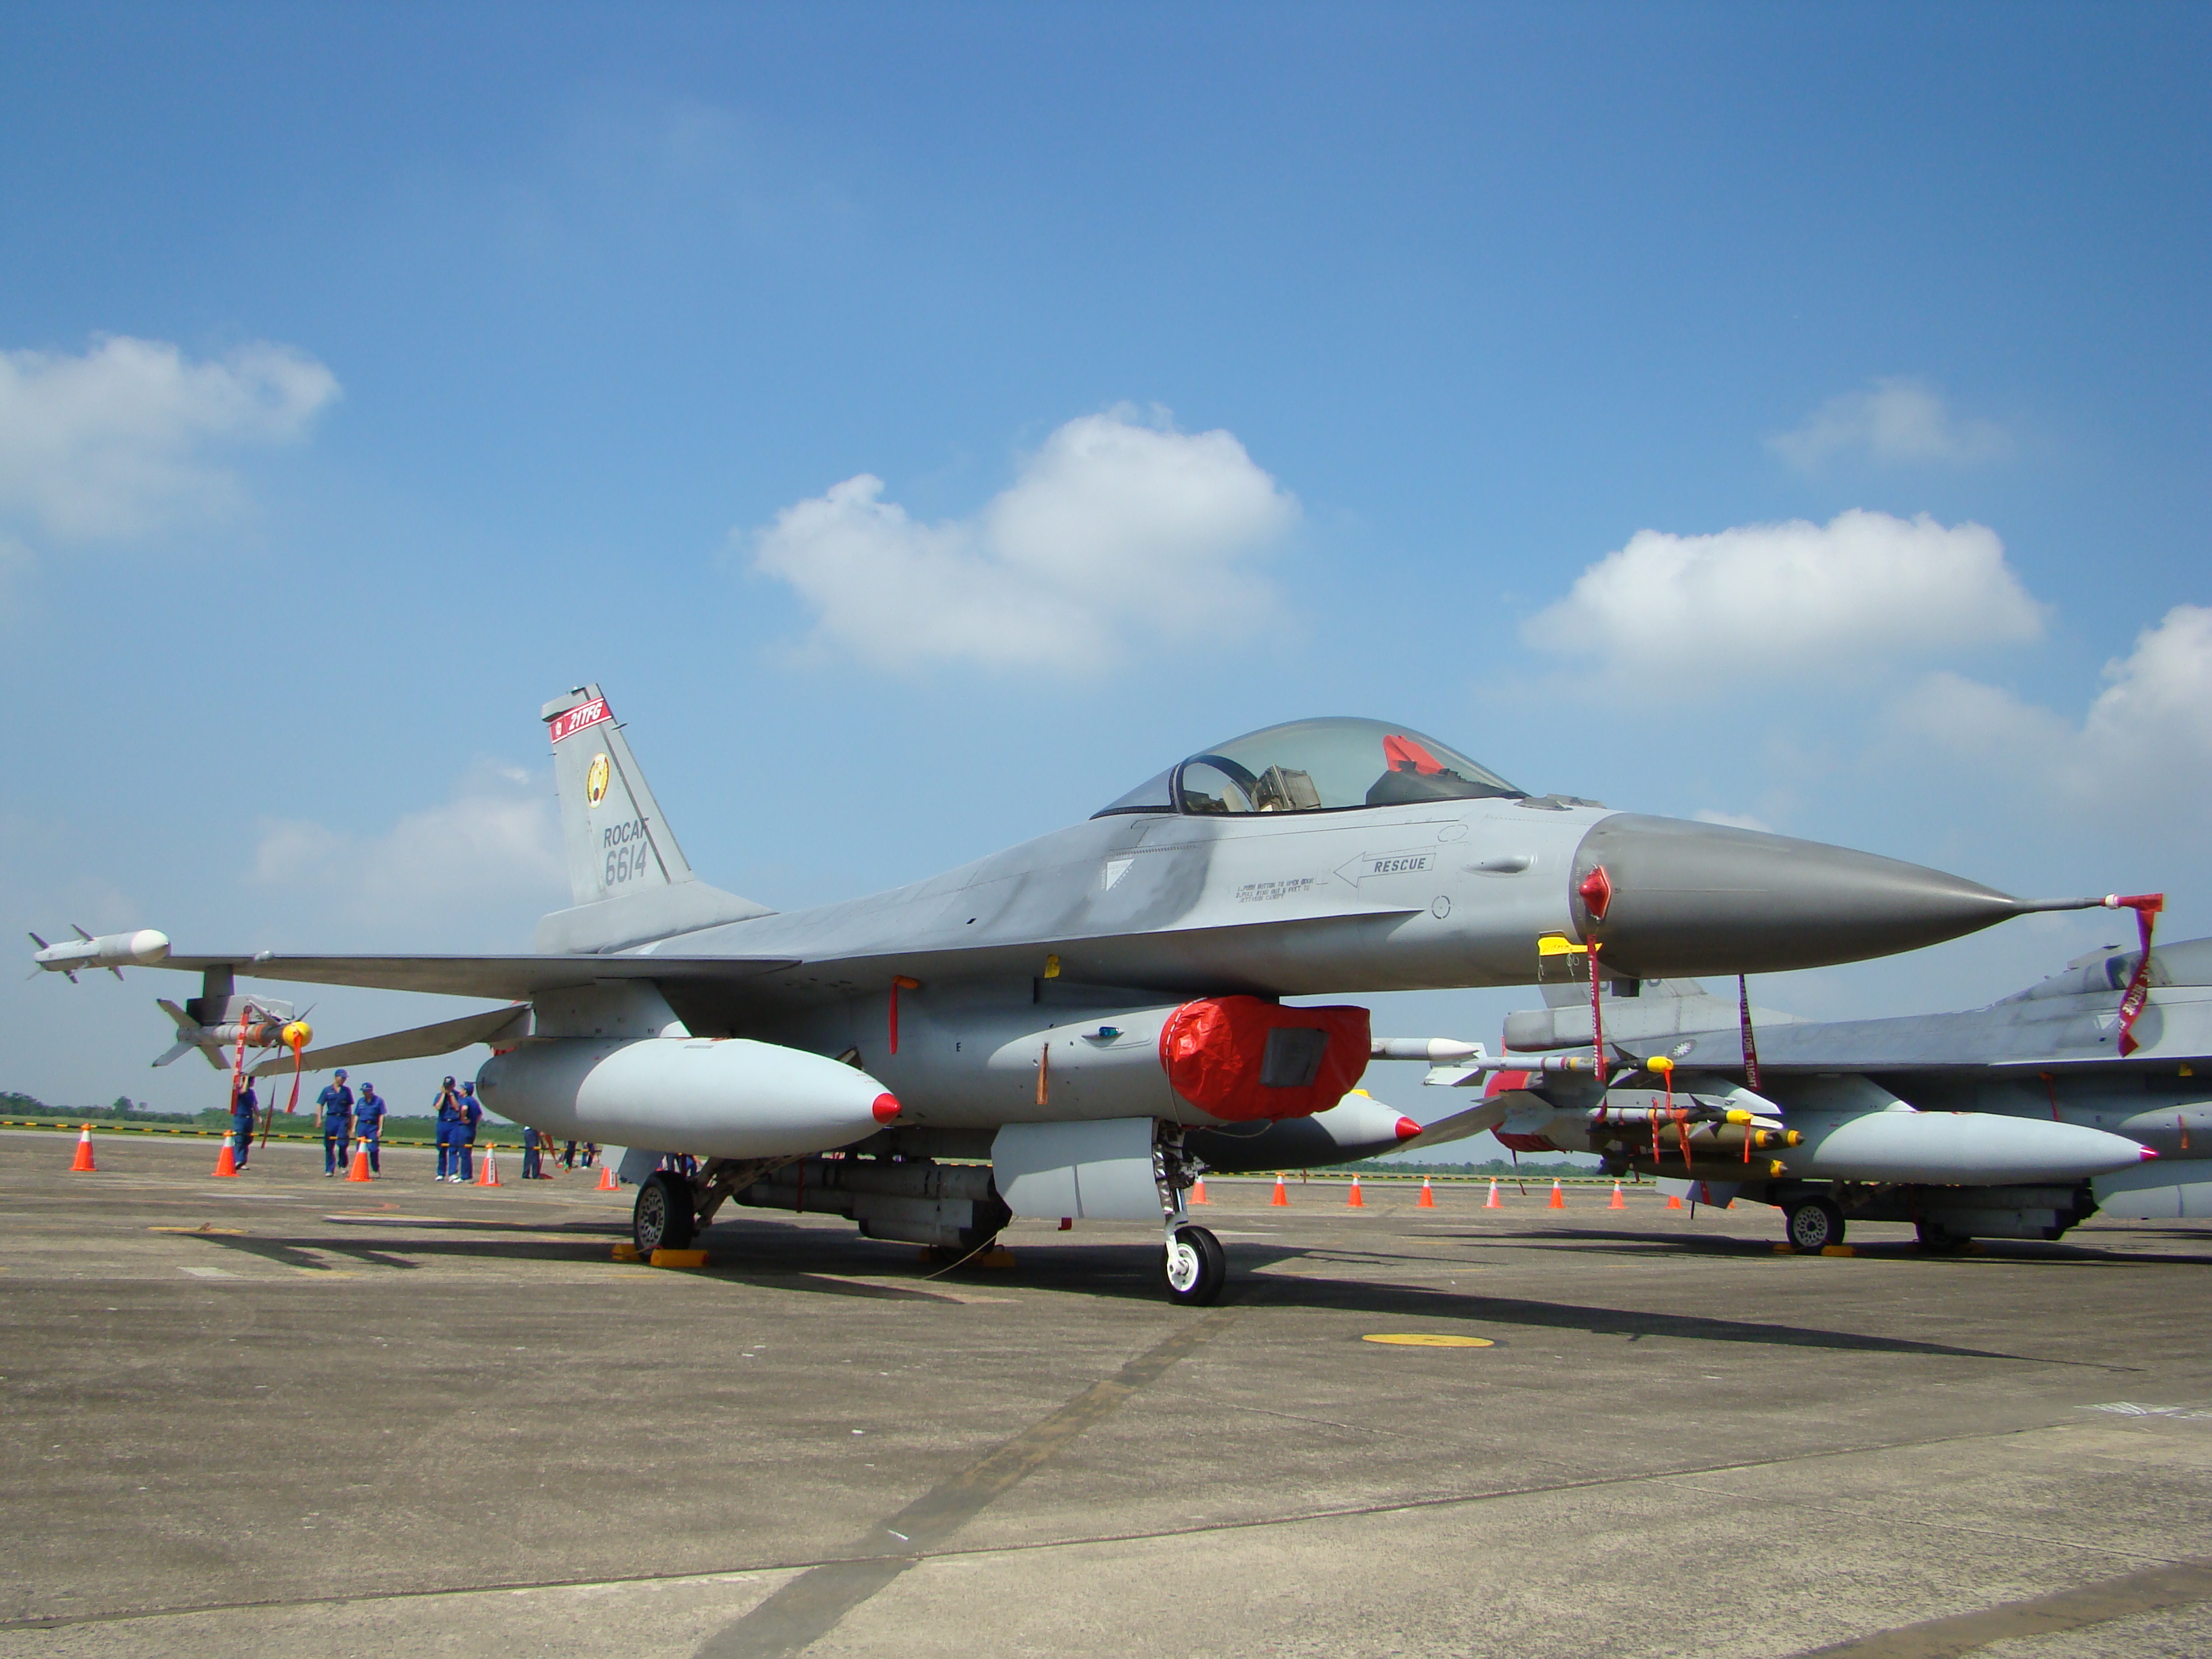 Újak helyett marad az átépített régi F-16A <br>(fotó: zone-interdite.net)